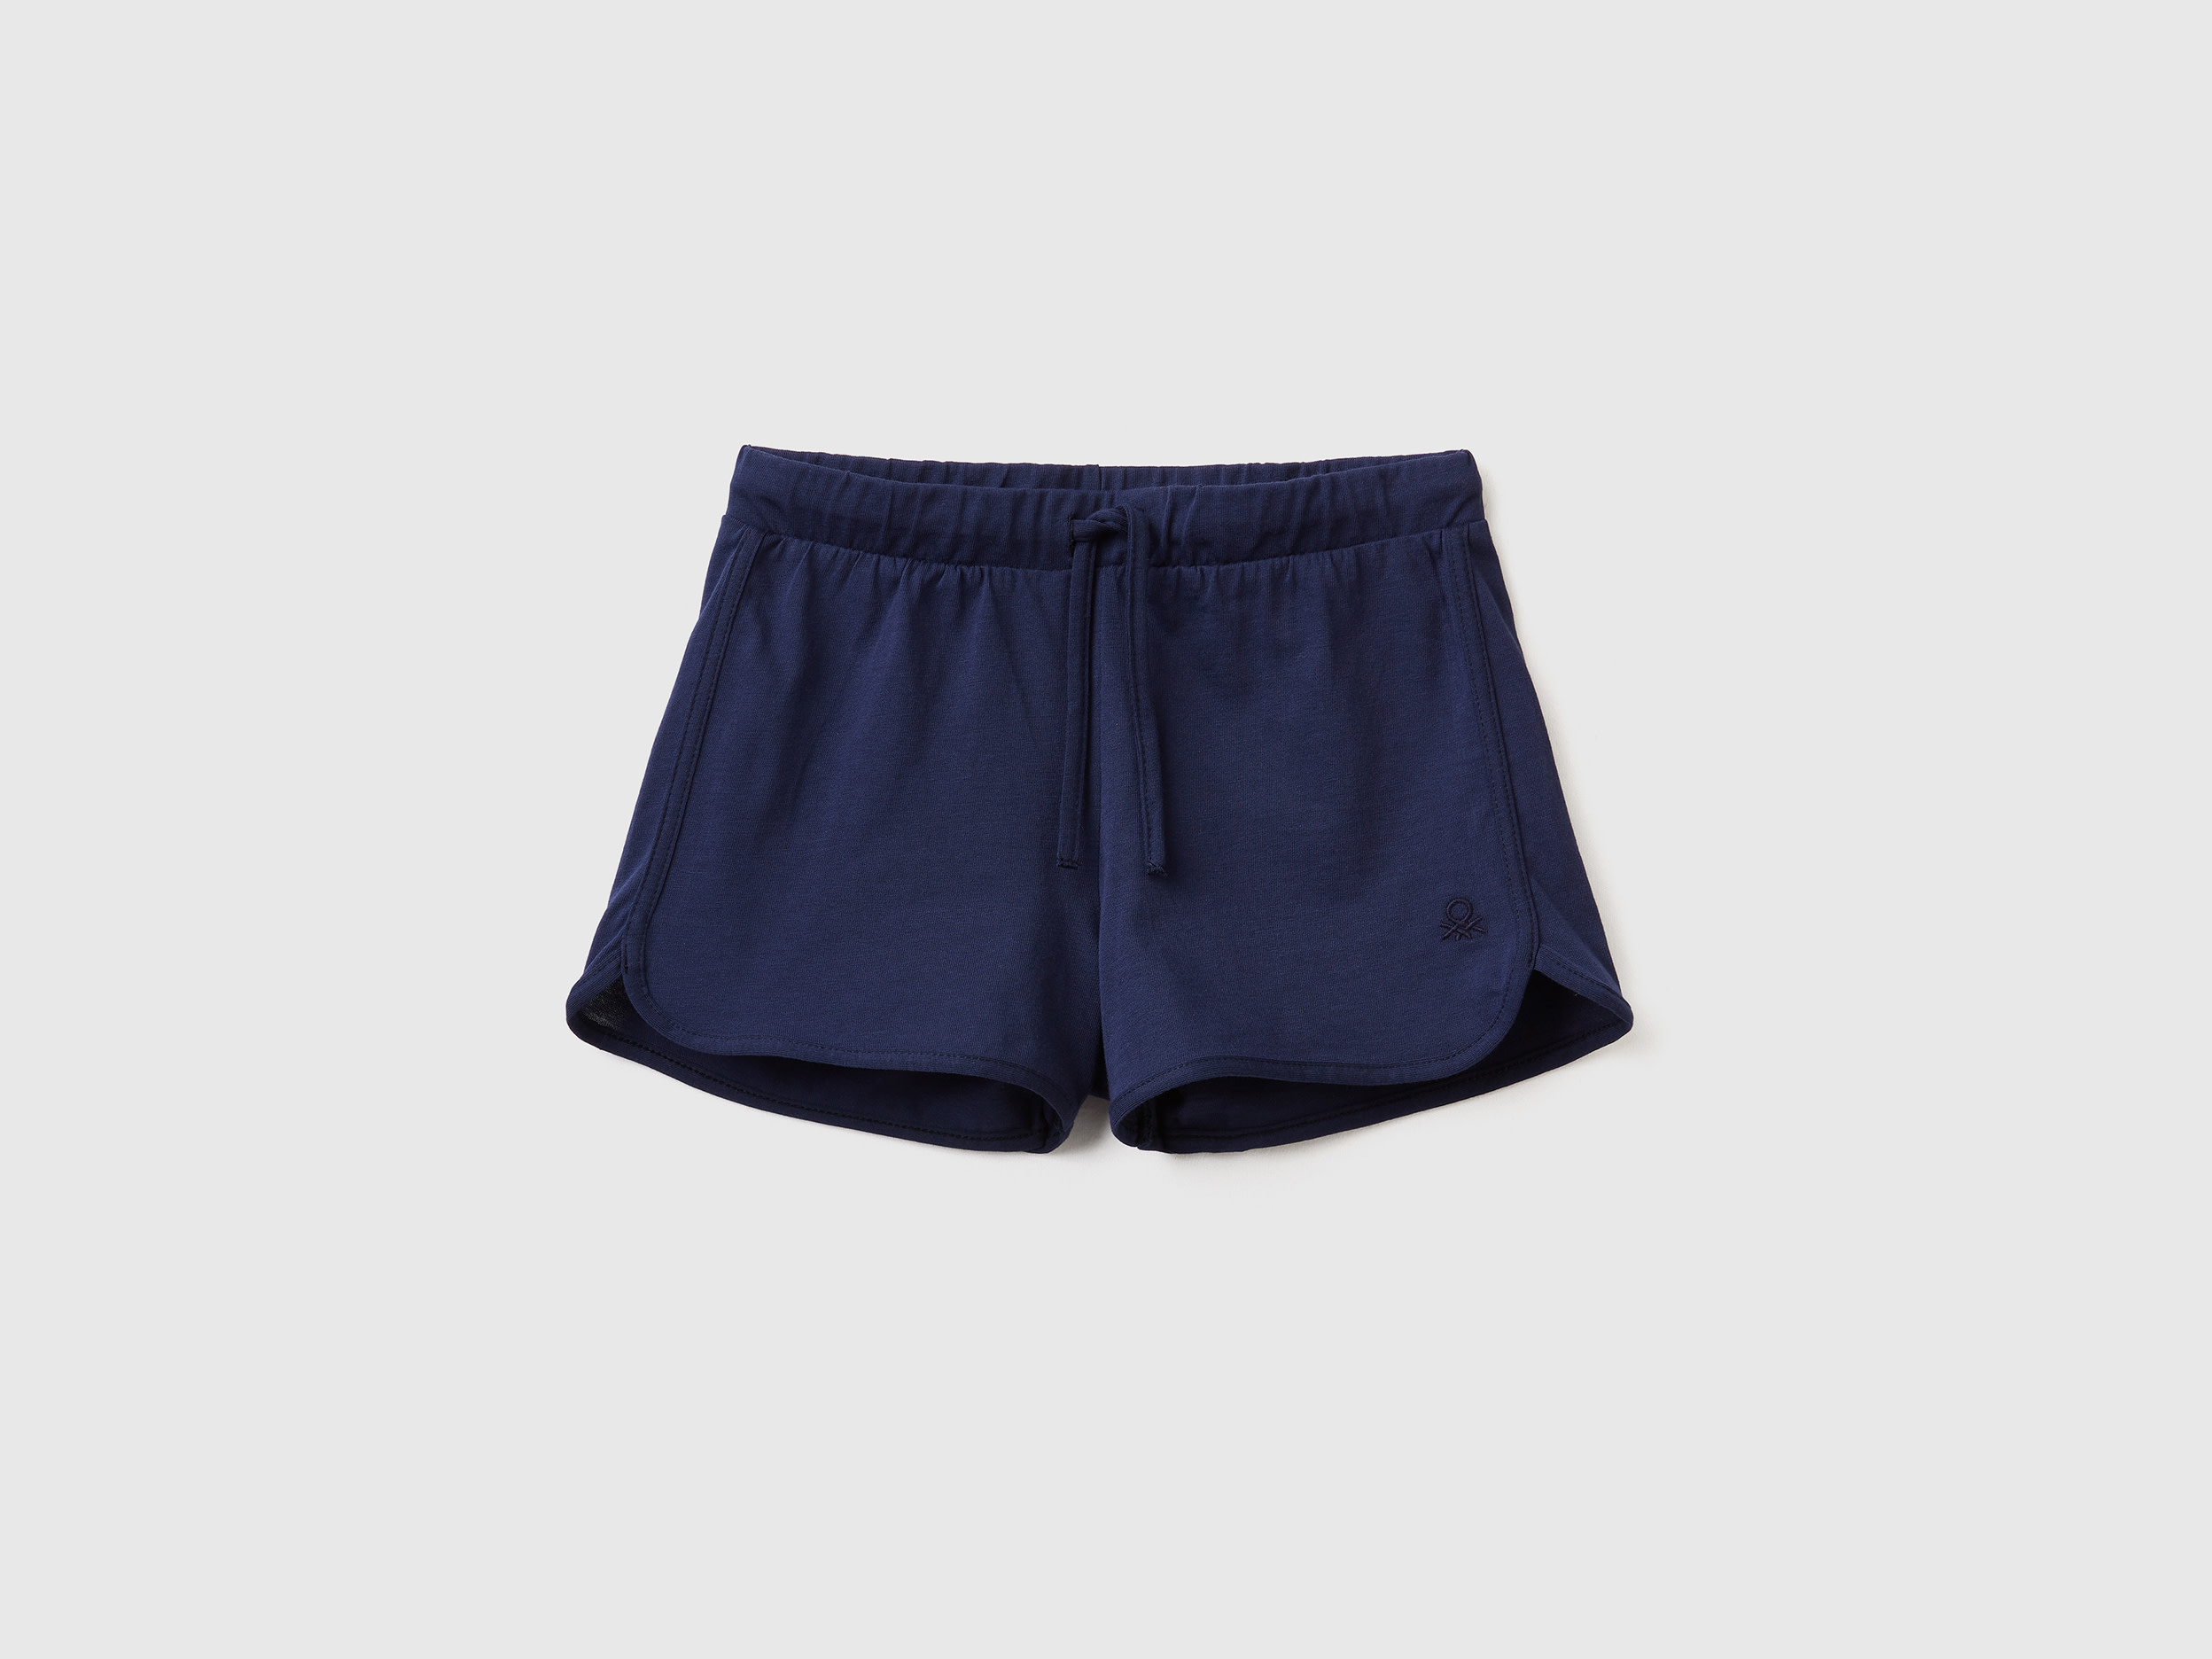 Benetton, Runner Style Shorts In Organic Cotton, size 3XL, Dark Blue, Kids